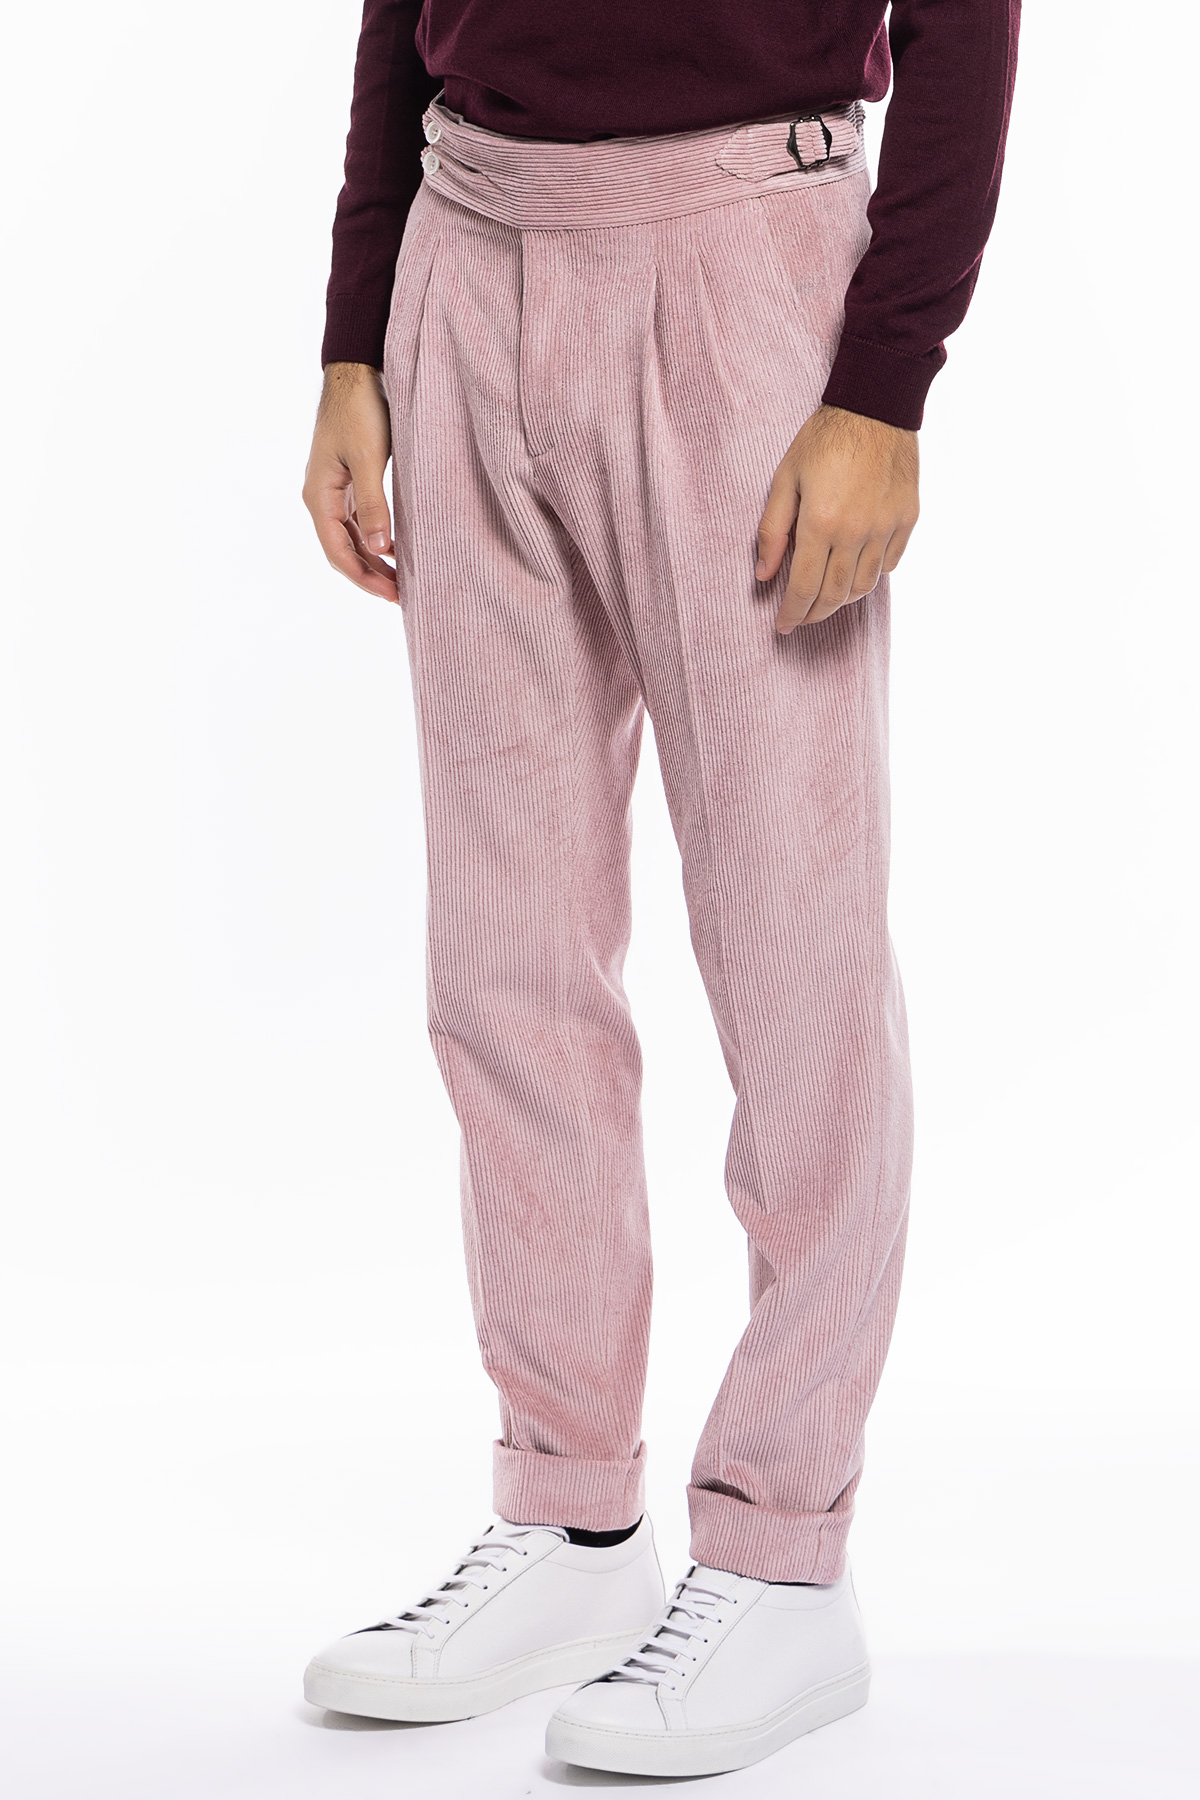 Pantalone uomo rosa vita alta biforcato doppia pinces in velluto a costine strette